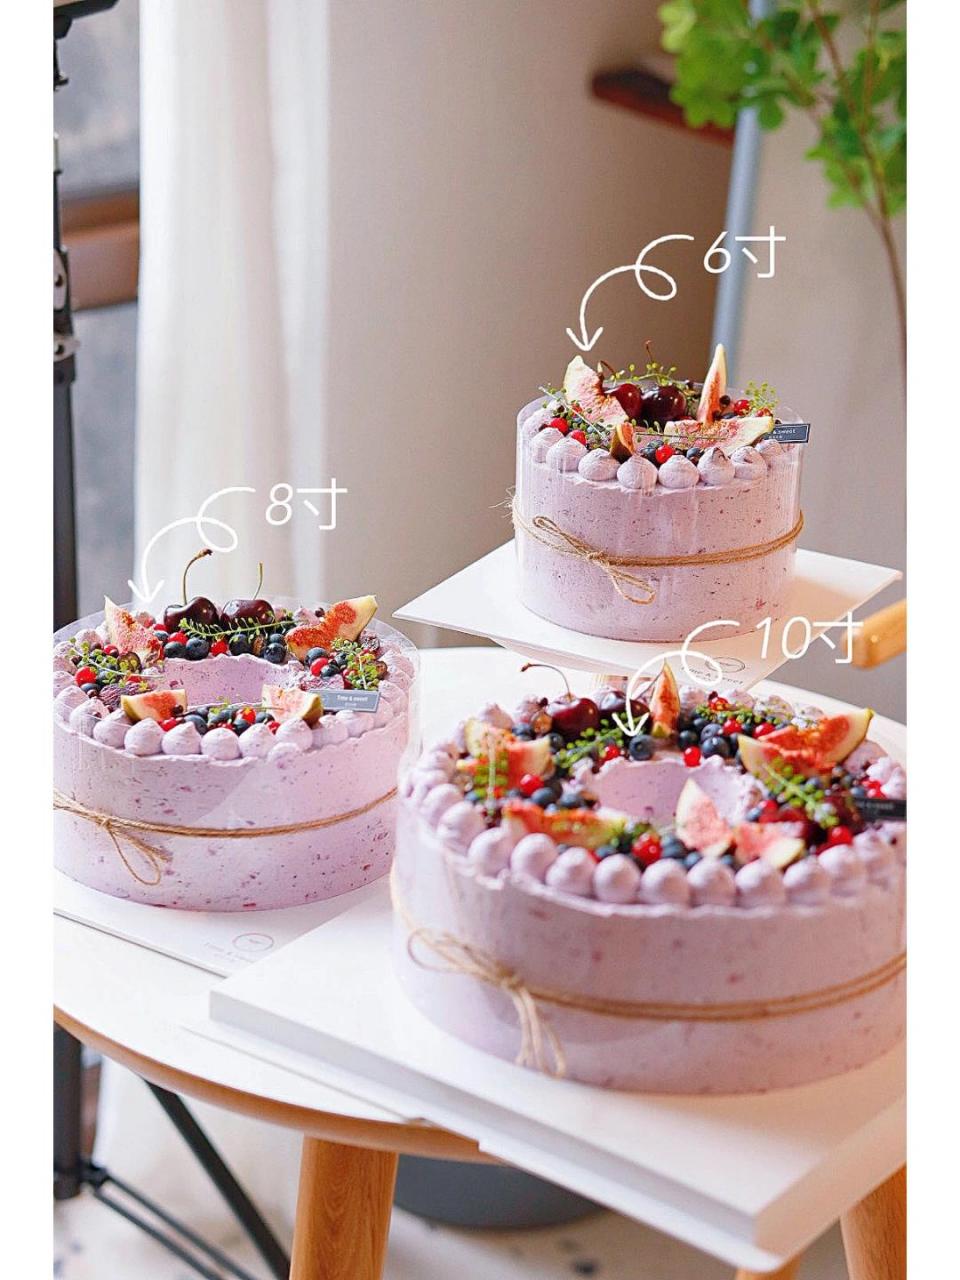 6寸和8寸蛋糕对比照图片